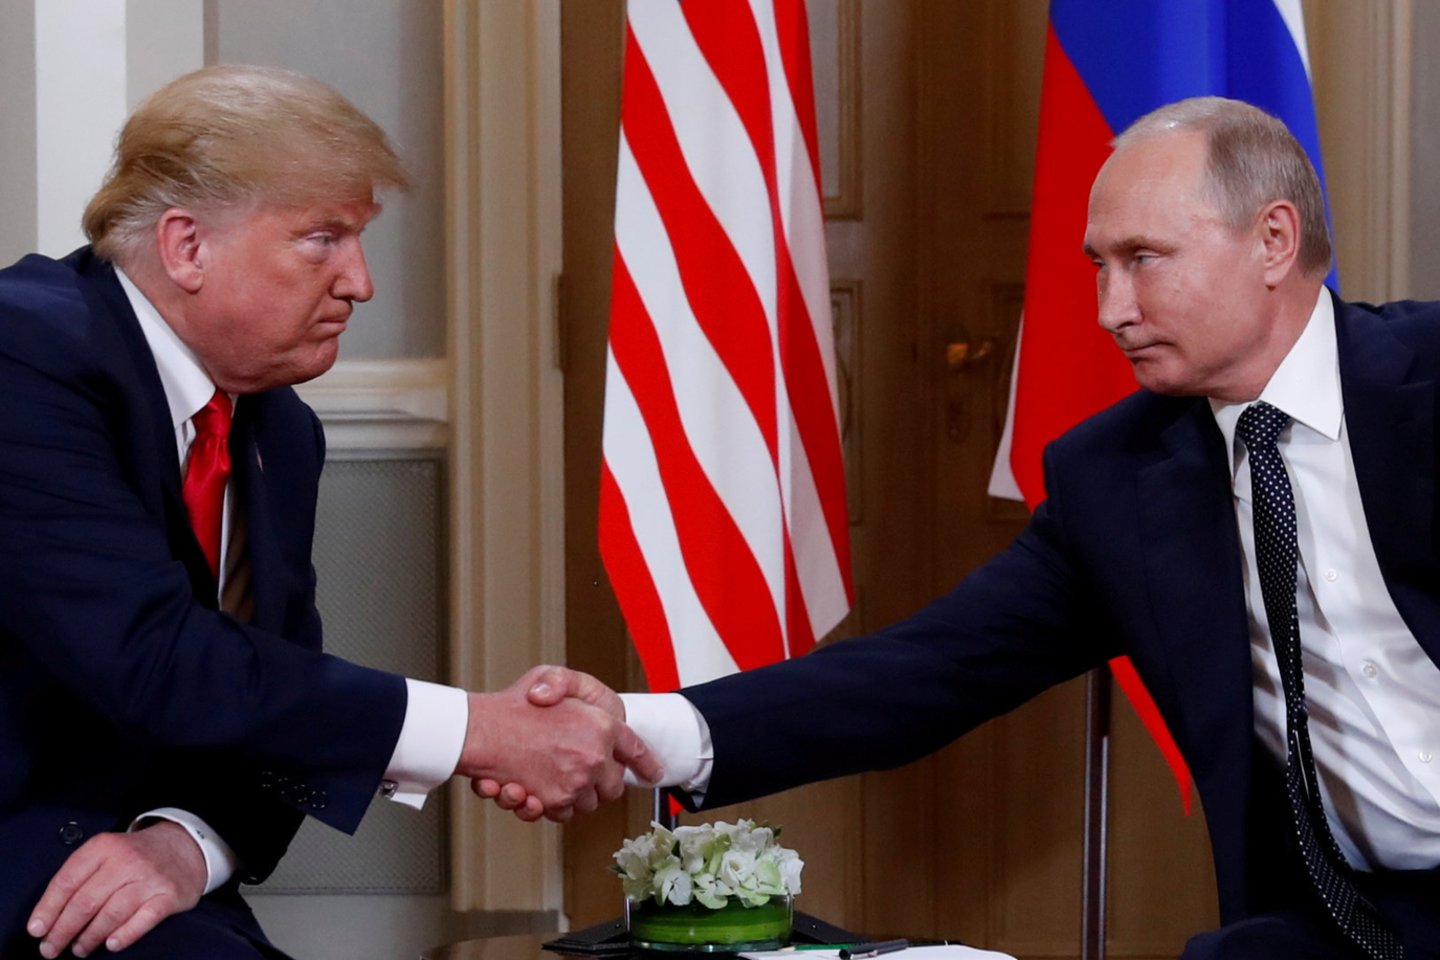 Praėjusį mėnesį įvyko JAV ir Rusijos viršūnių susitikimas. Jame Vladimiras Putinas Donaldui Trumpui pateikė ilgą sąrašą prašymų ir pasiūlymų ginklų kontrolės tema. <br>AP nuotr.